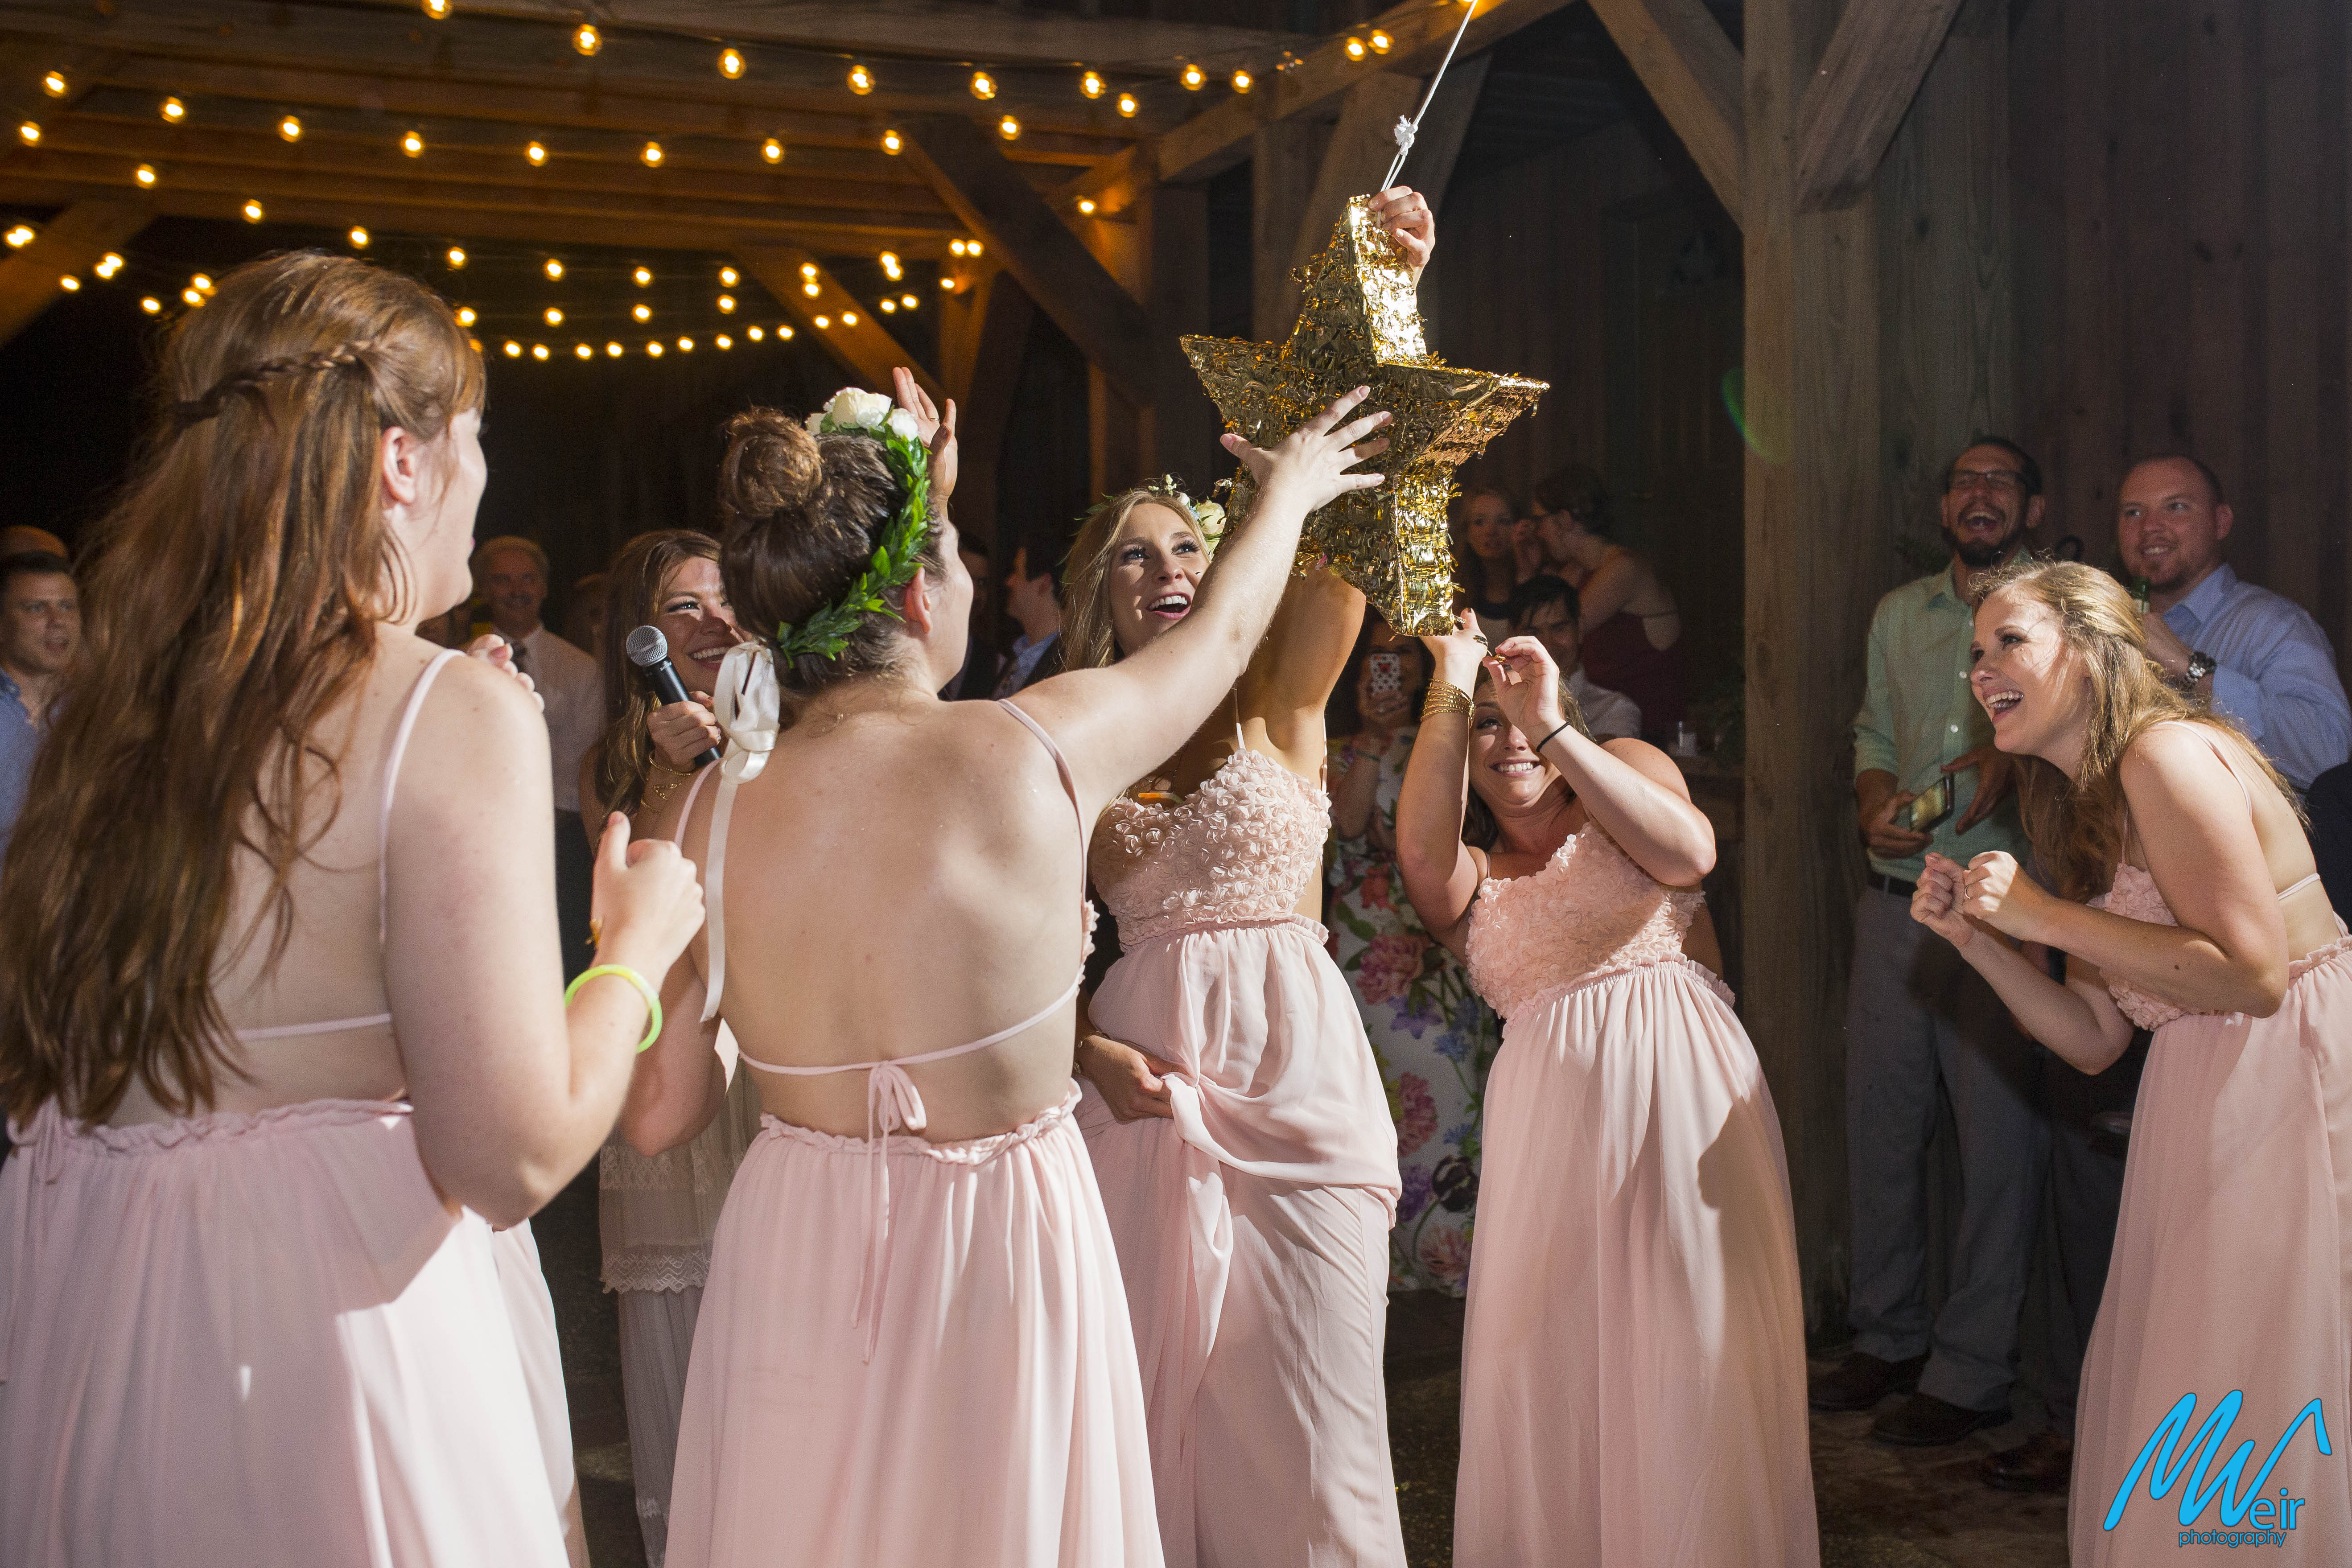 bridesmaids hit pinata at an outdoor wedding reception